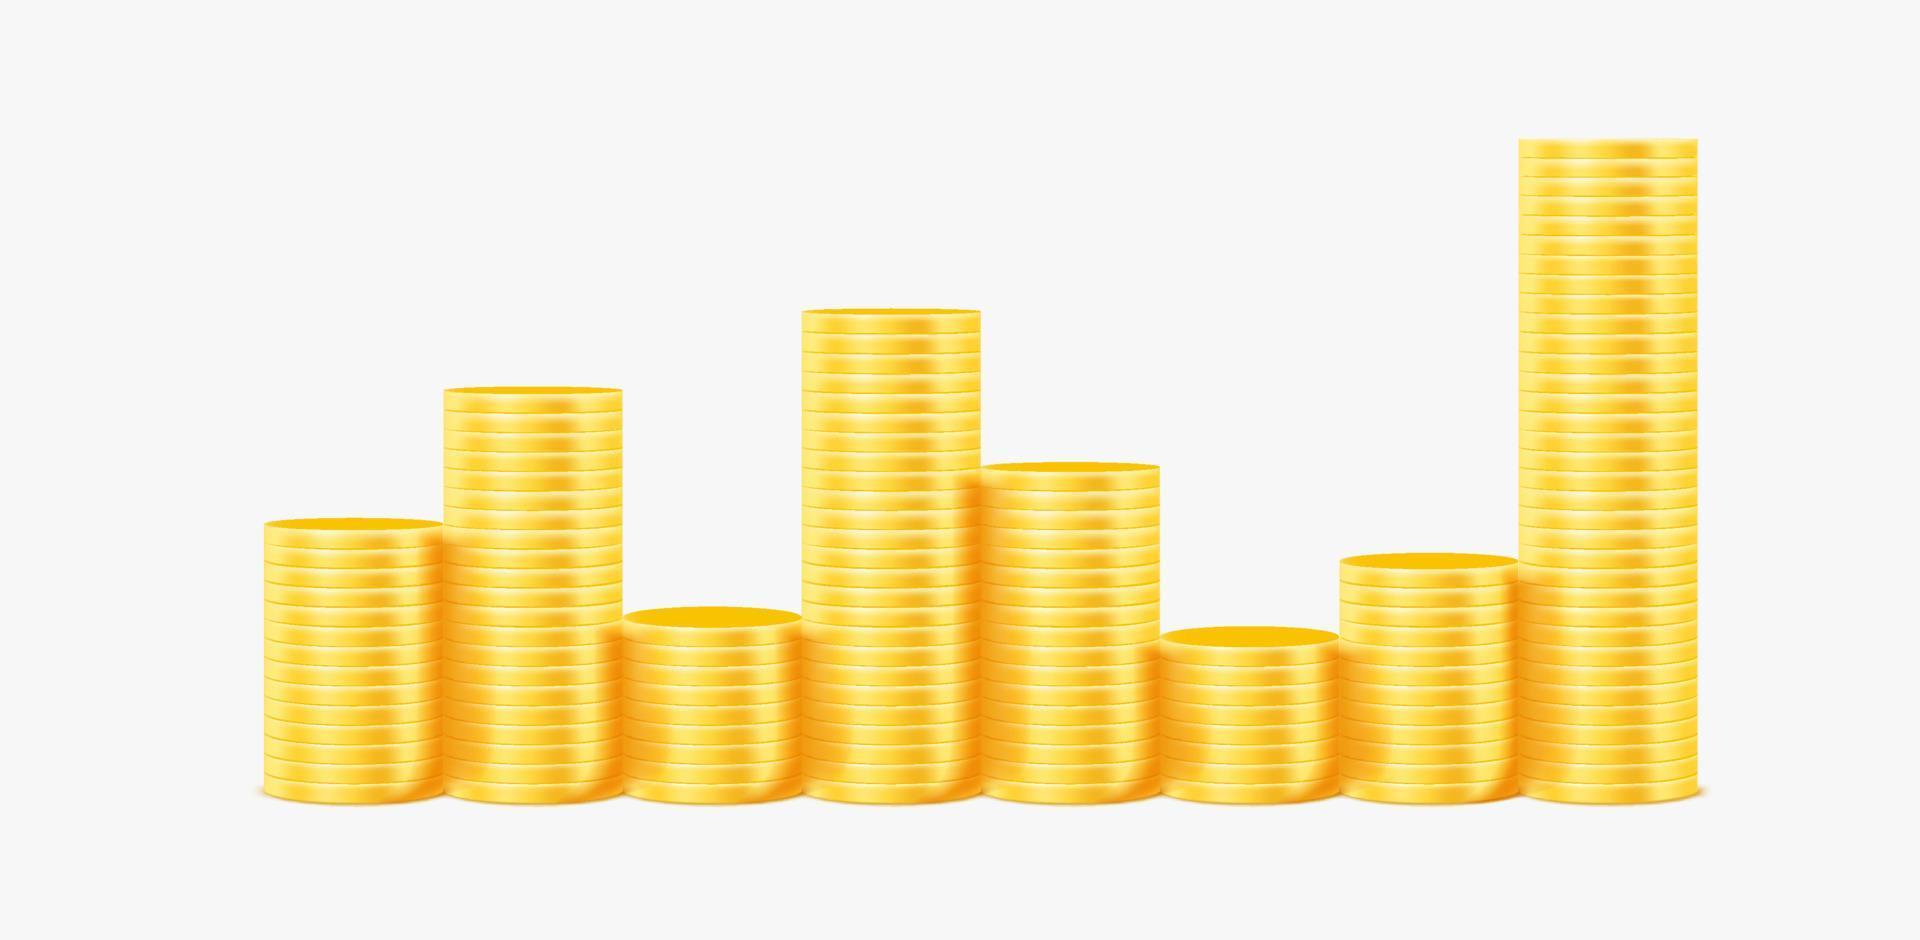 Stacks of golden coins in a line. Golden coins stacks vector illustration